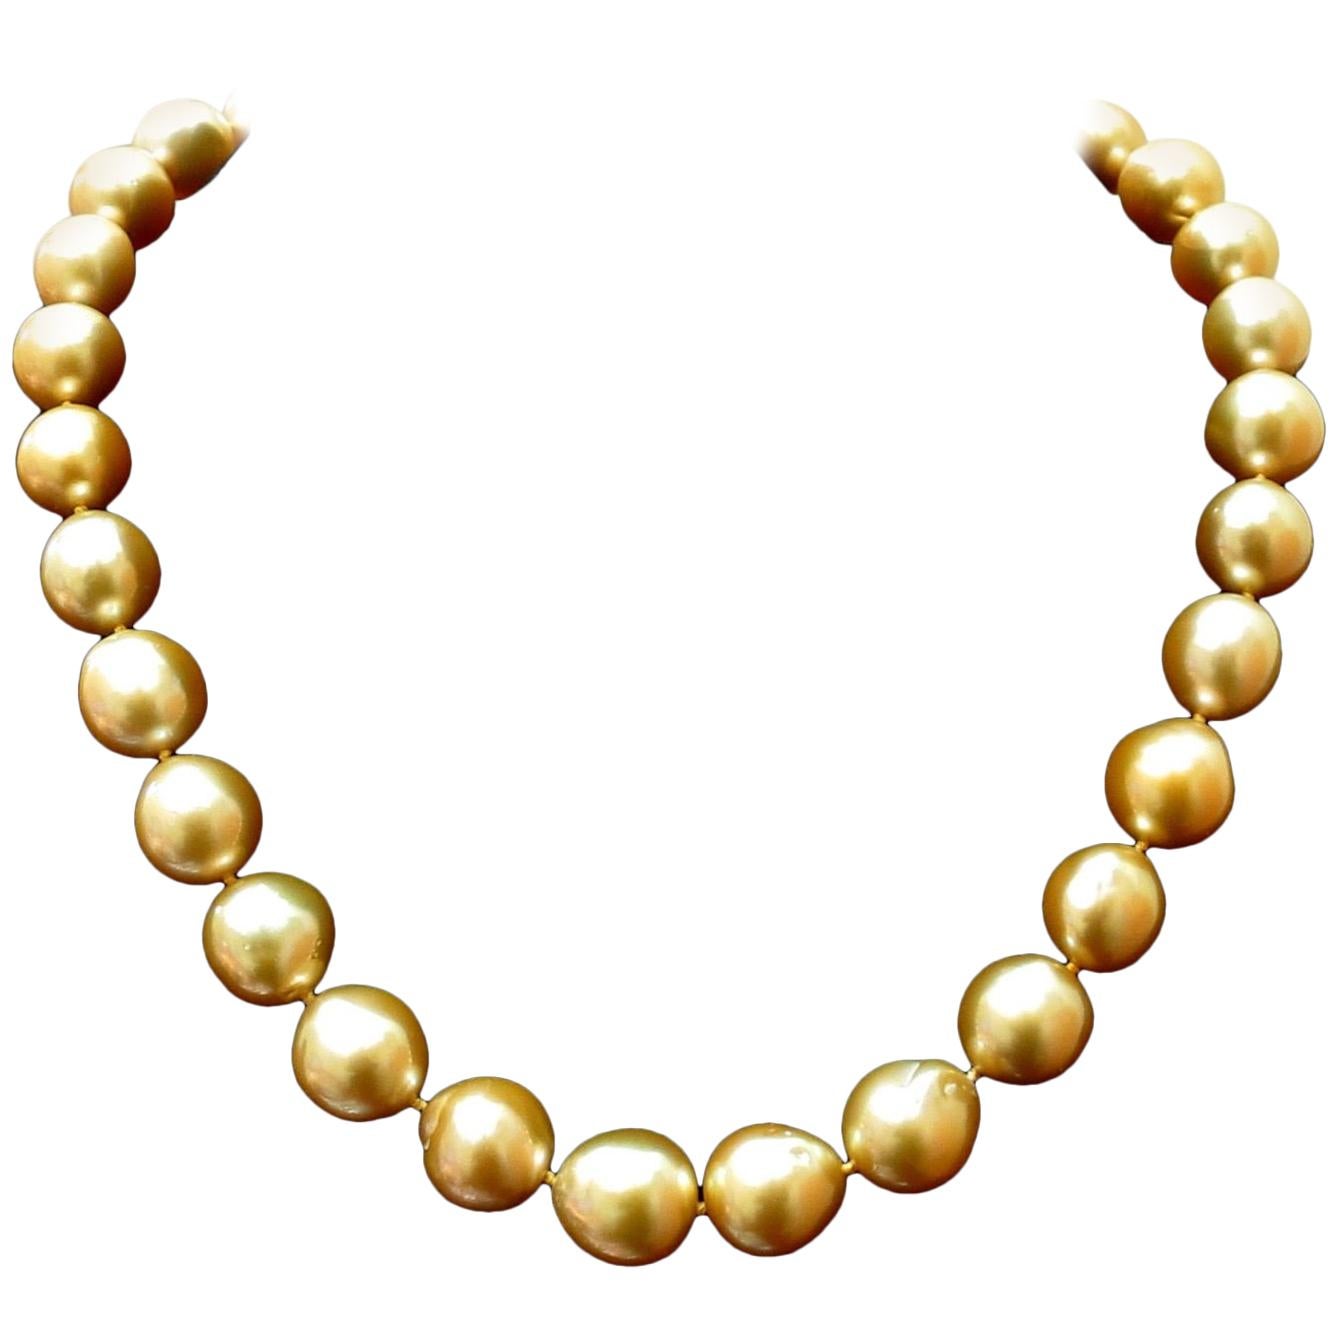 18 Karat Natural South Sea Yellow Pearls Necklace .50 Carat Diamond Clasp